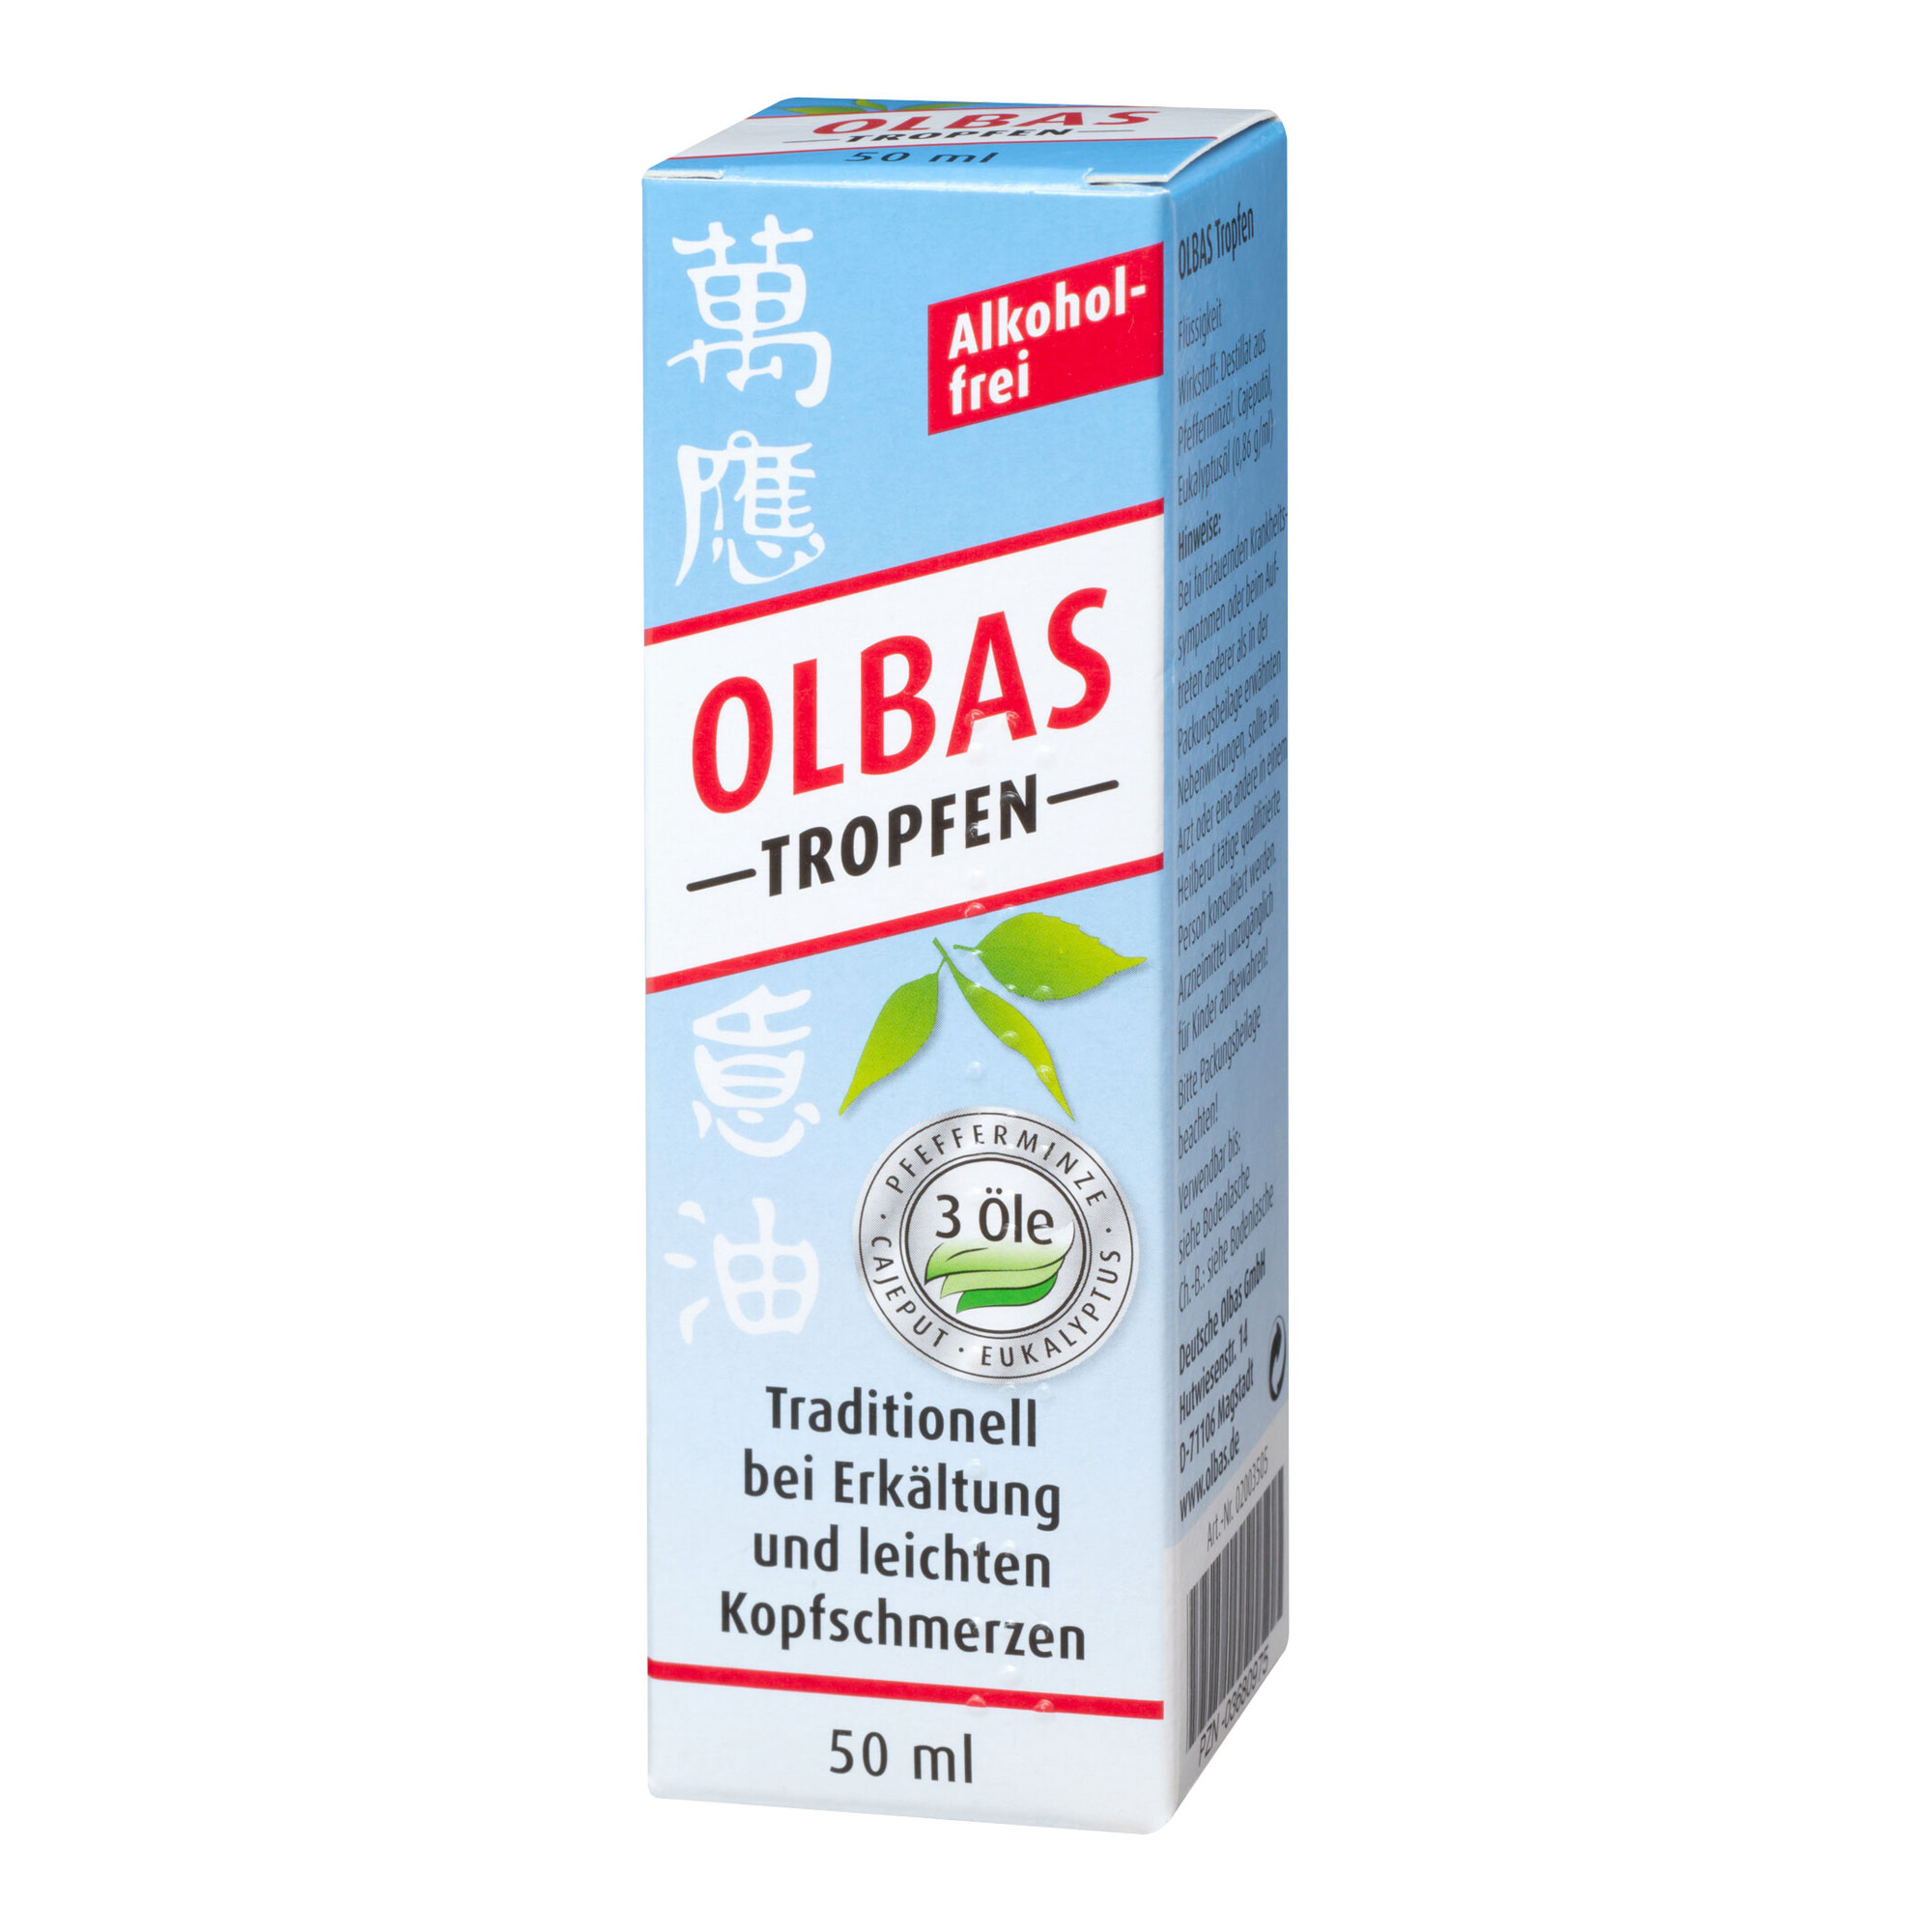 Traditionell angewendet zur Einnahme und Inhalation bei Erkältungskrankheit (Husten, Schnupfen, Heiserkeit).